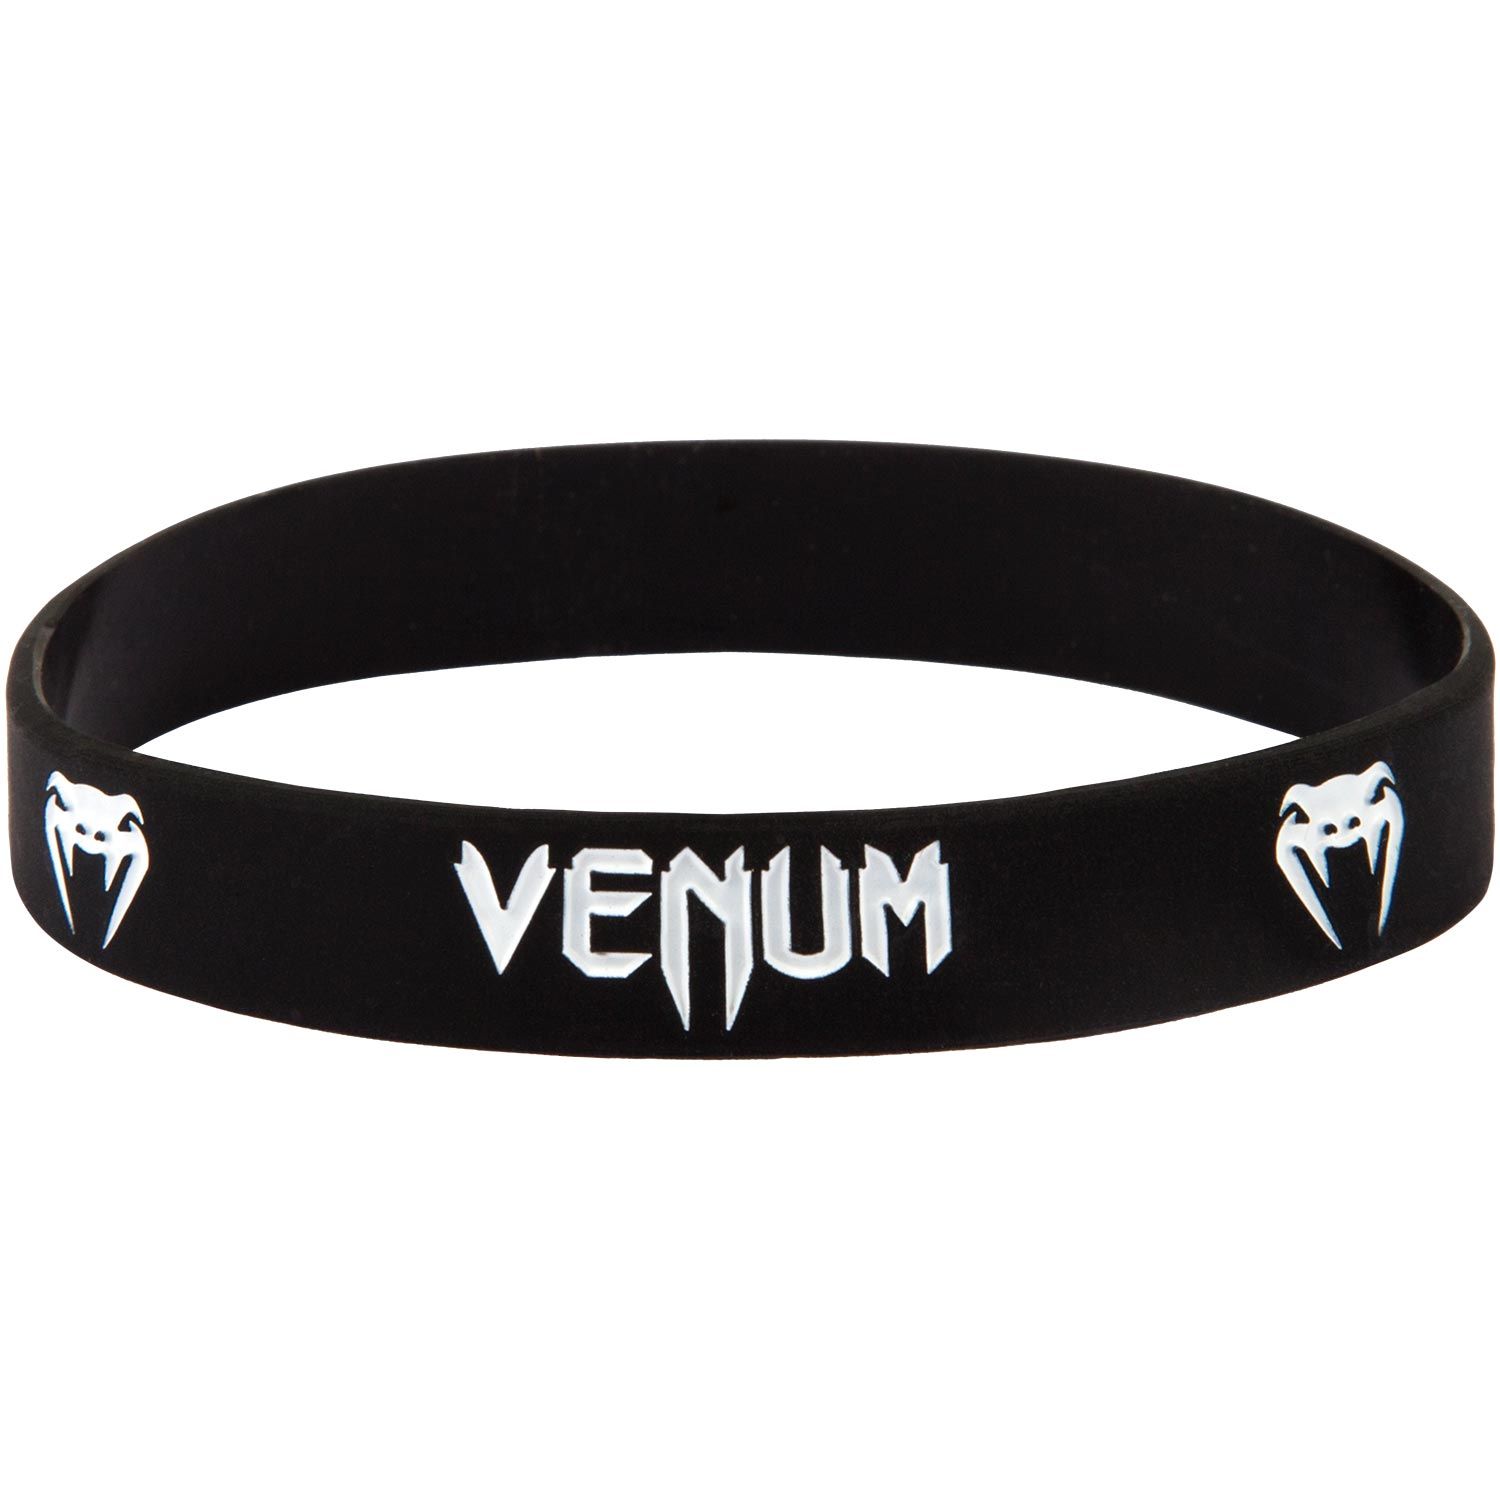 Venum Armband - Schwarz/Weiß